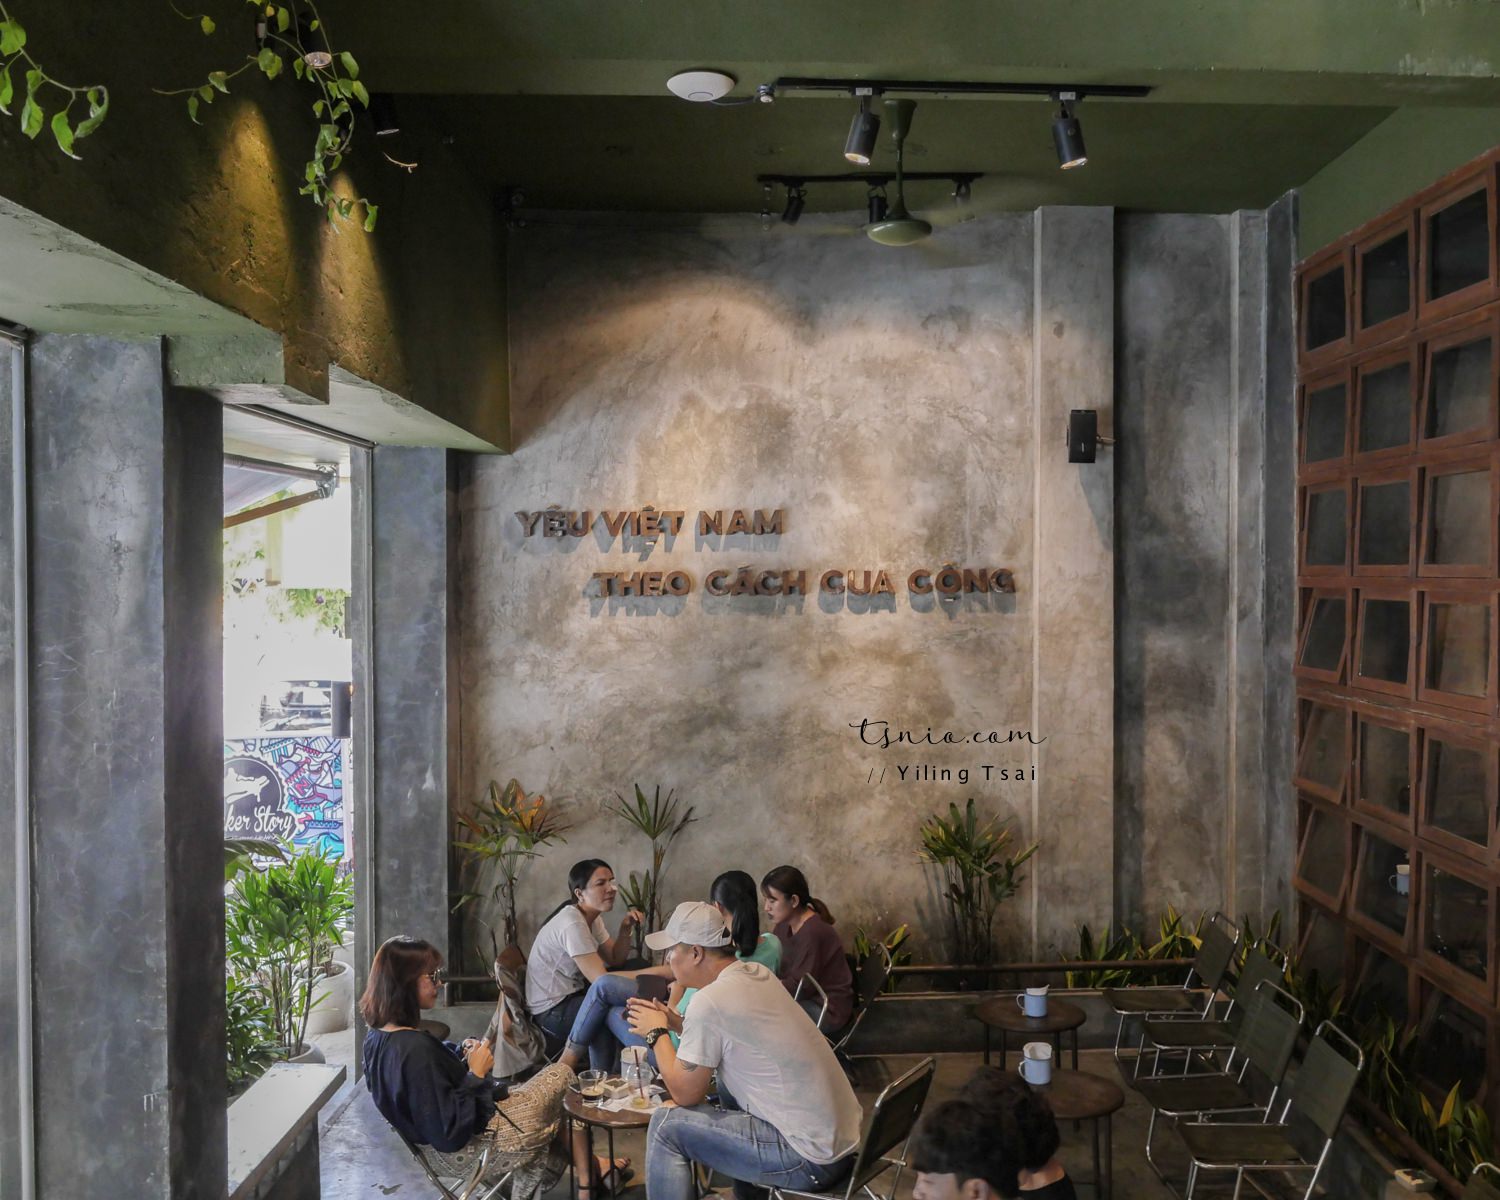 越南峴港咖啡廳 Cong Caphe 越共咖啡 越南特色咖啡廳品牌